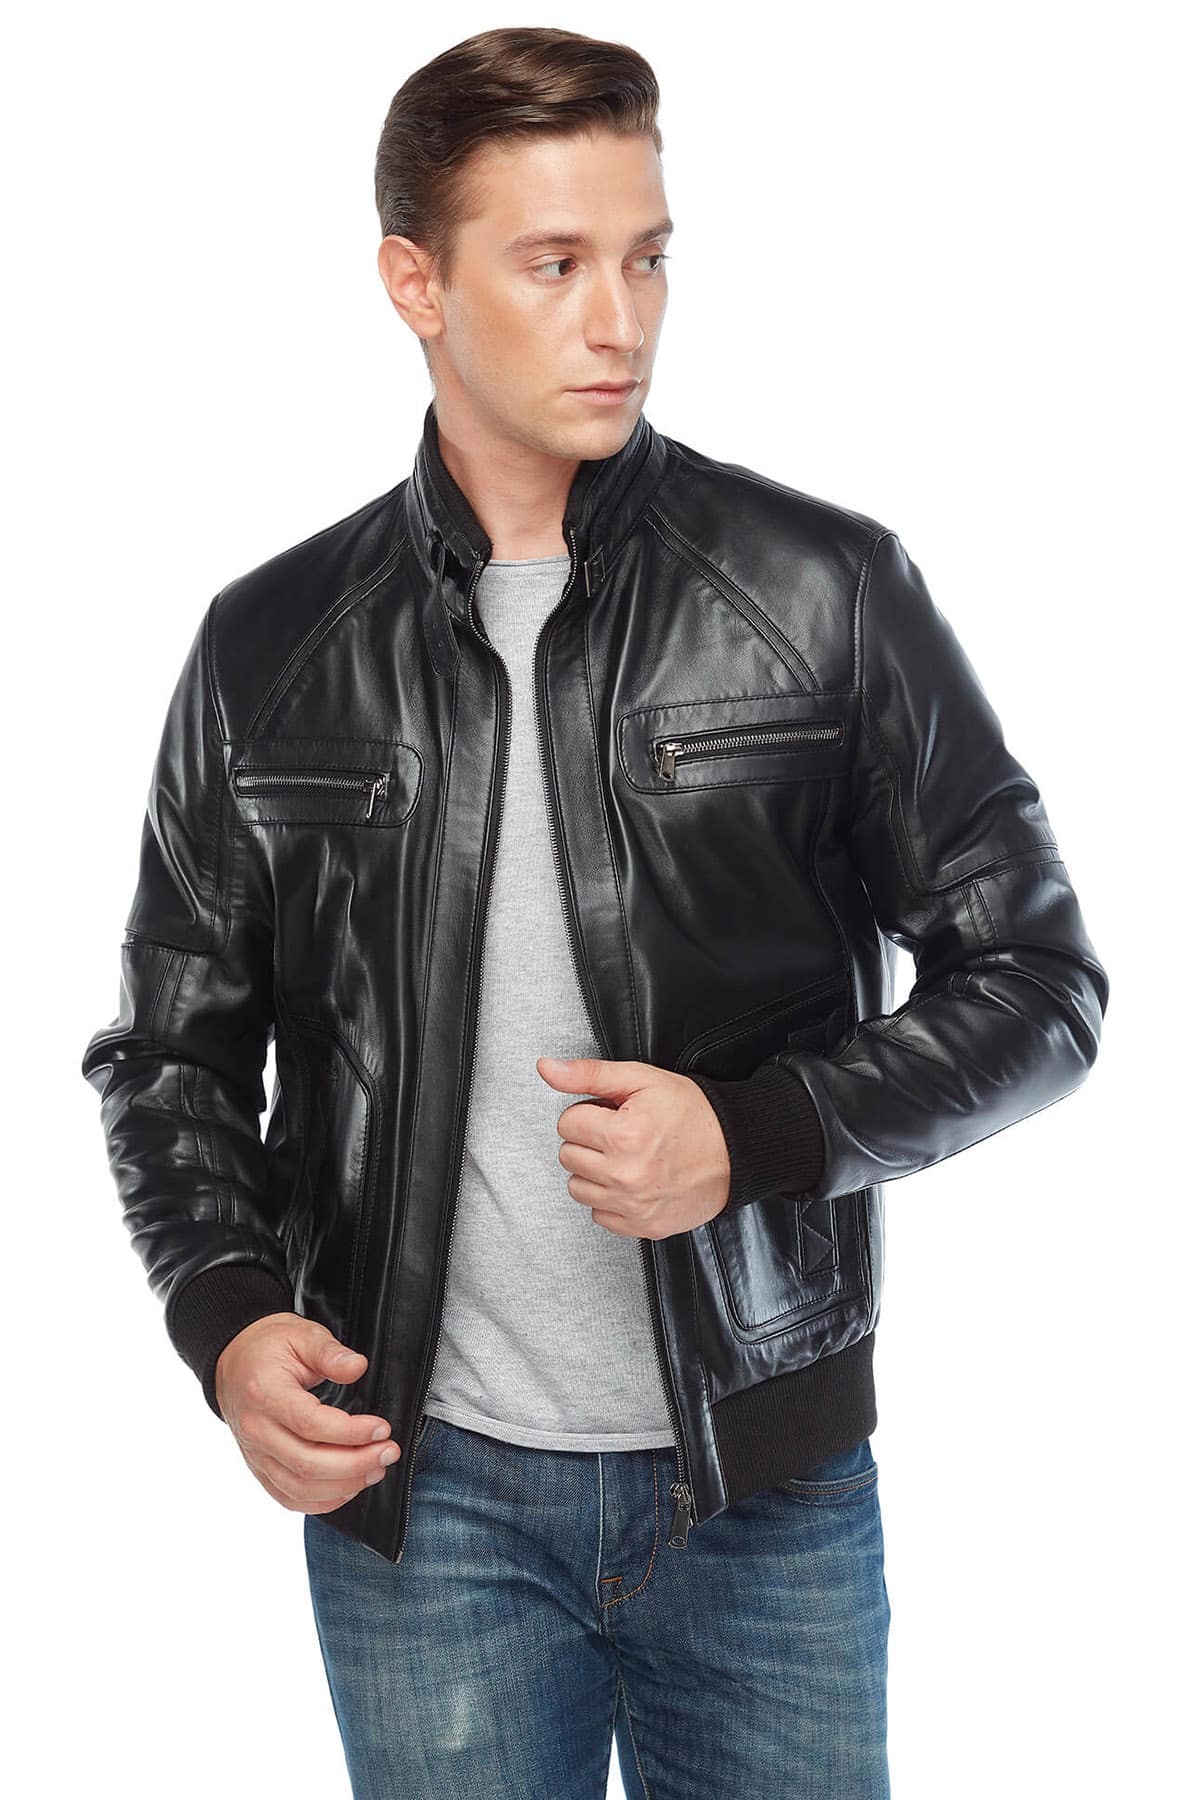 George Craig Black Leather Jacket Pose